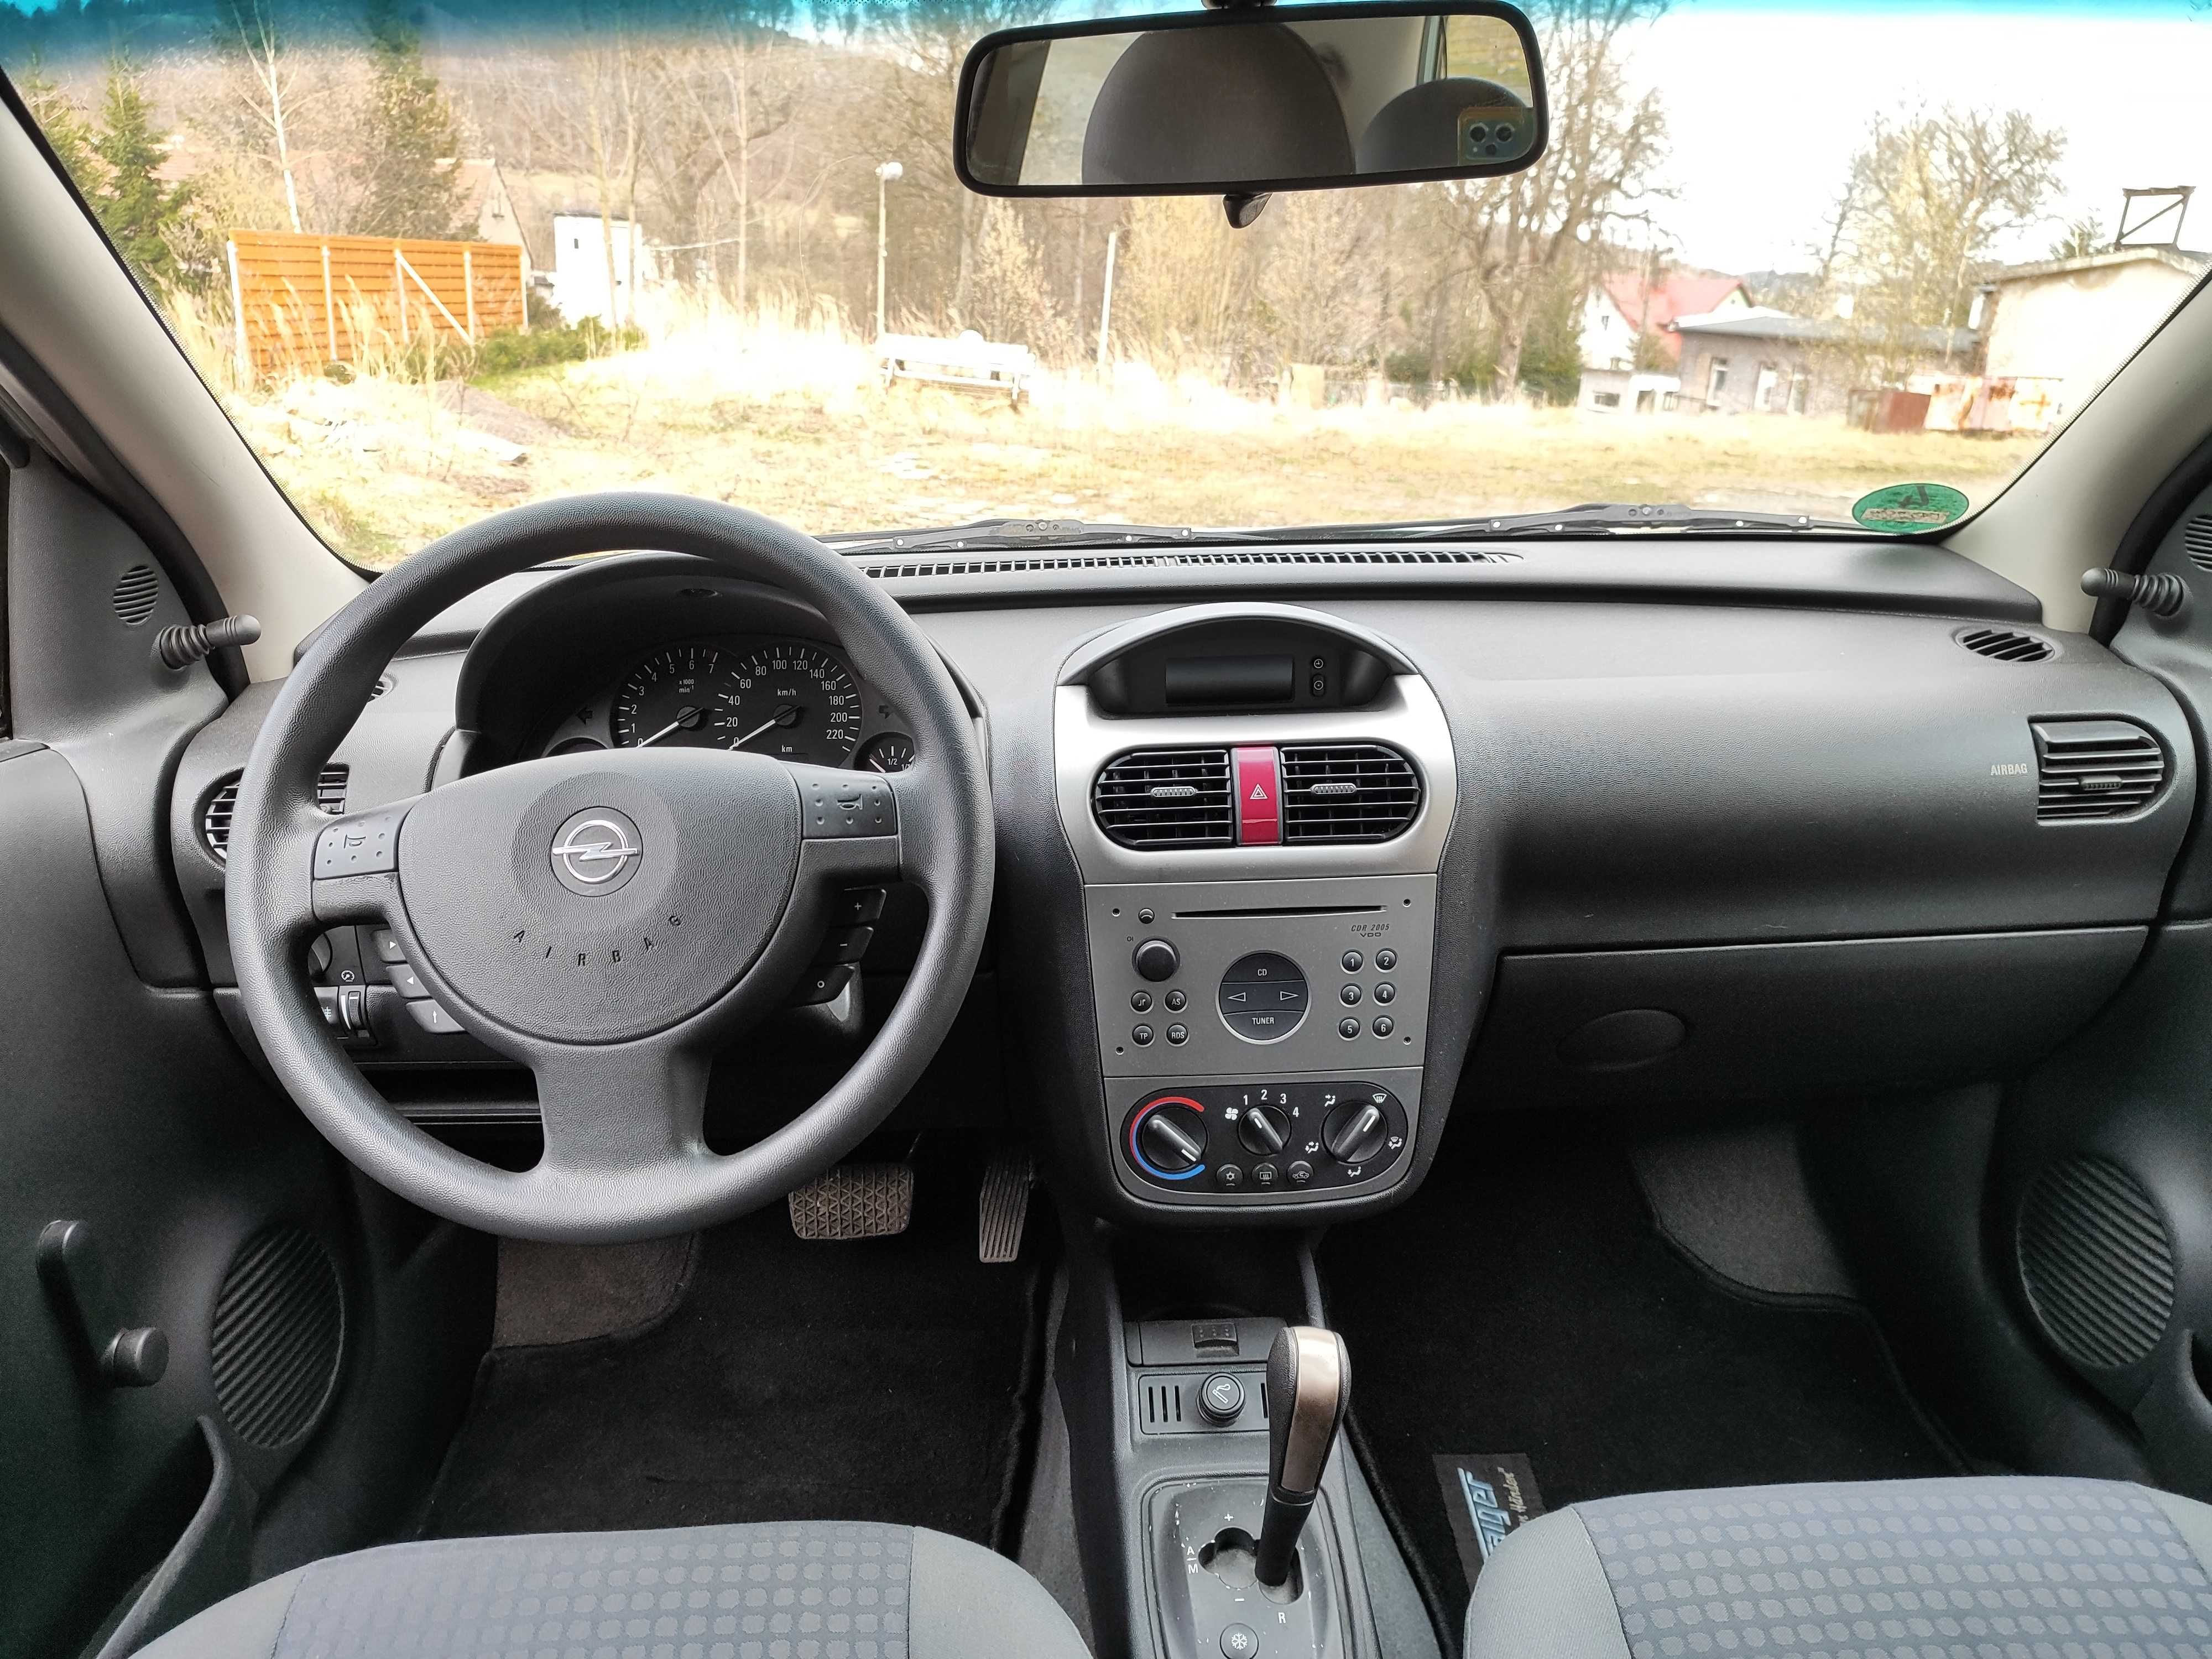 Opel Corsa C 1.0 Automat! 77500km! Sprawna klima! Bez rdzy!